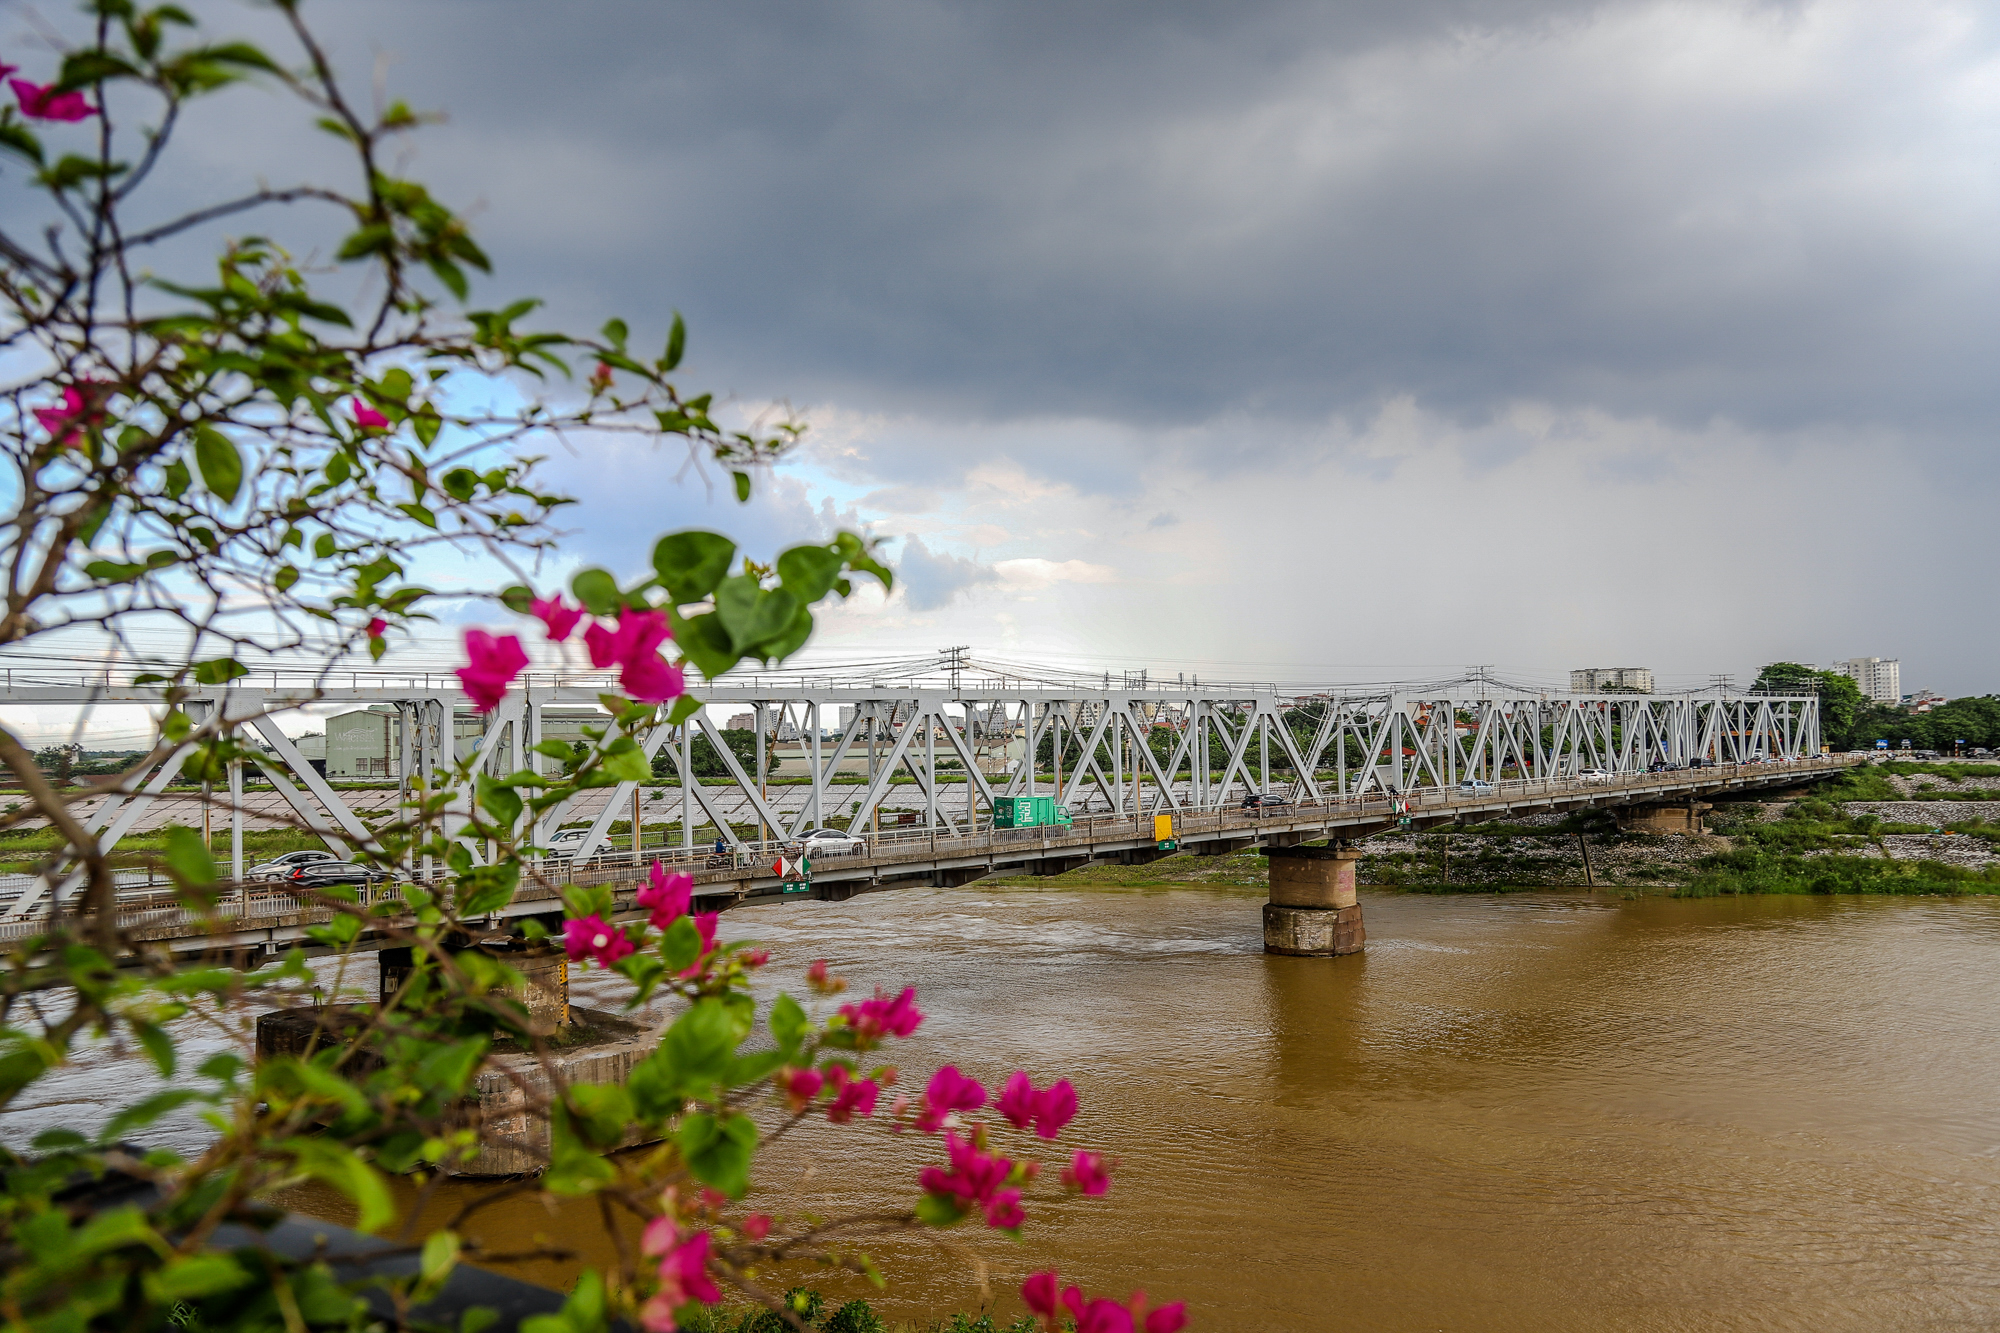 Cầu quay đầu tiên ở Việt Nam, ra đời trước cầu sông Hàn gần 100 năm - Ảnh 1.